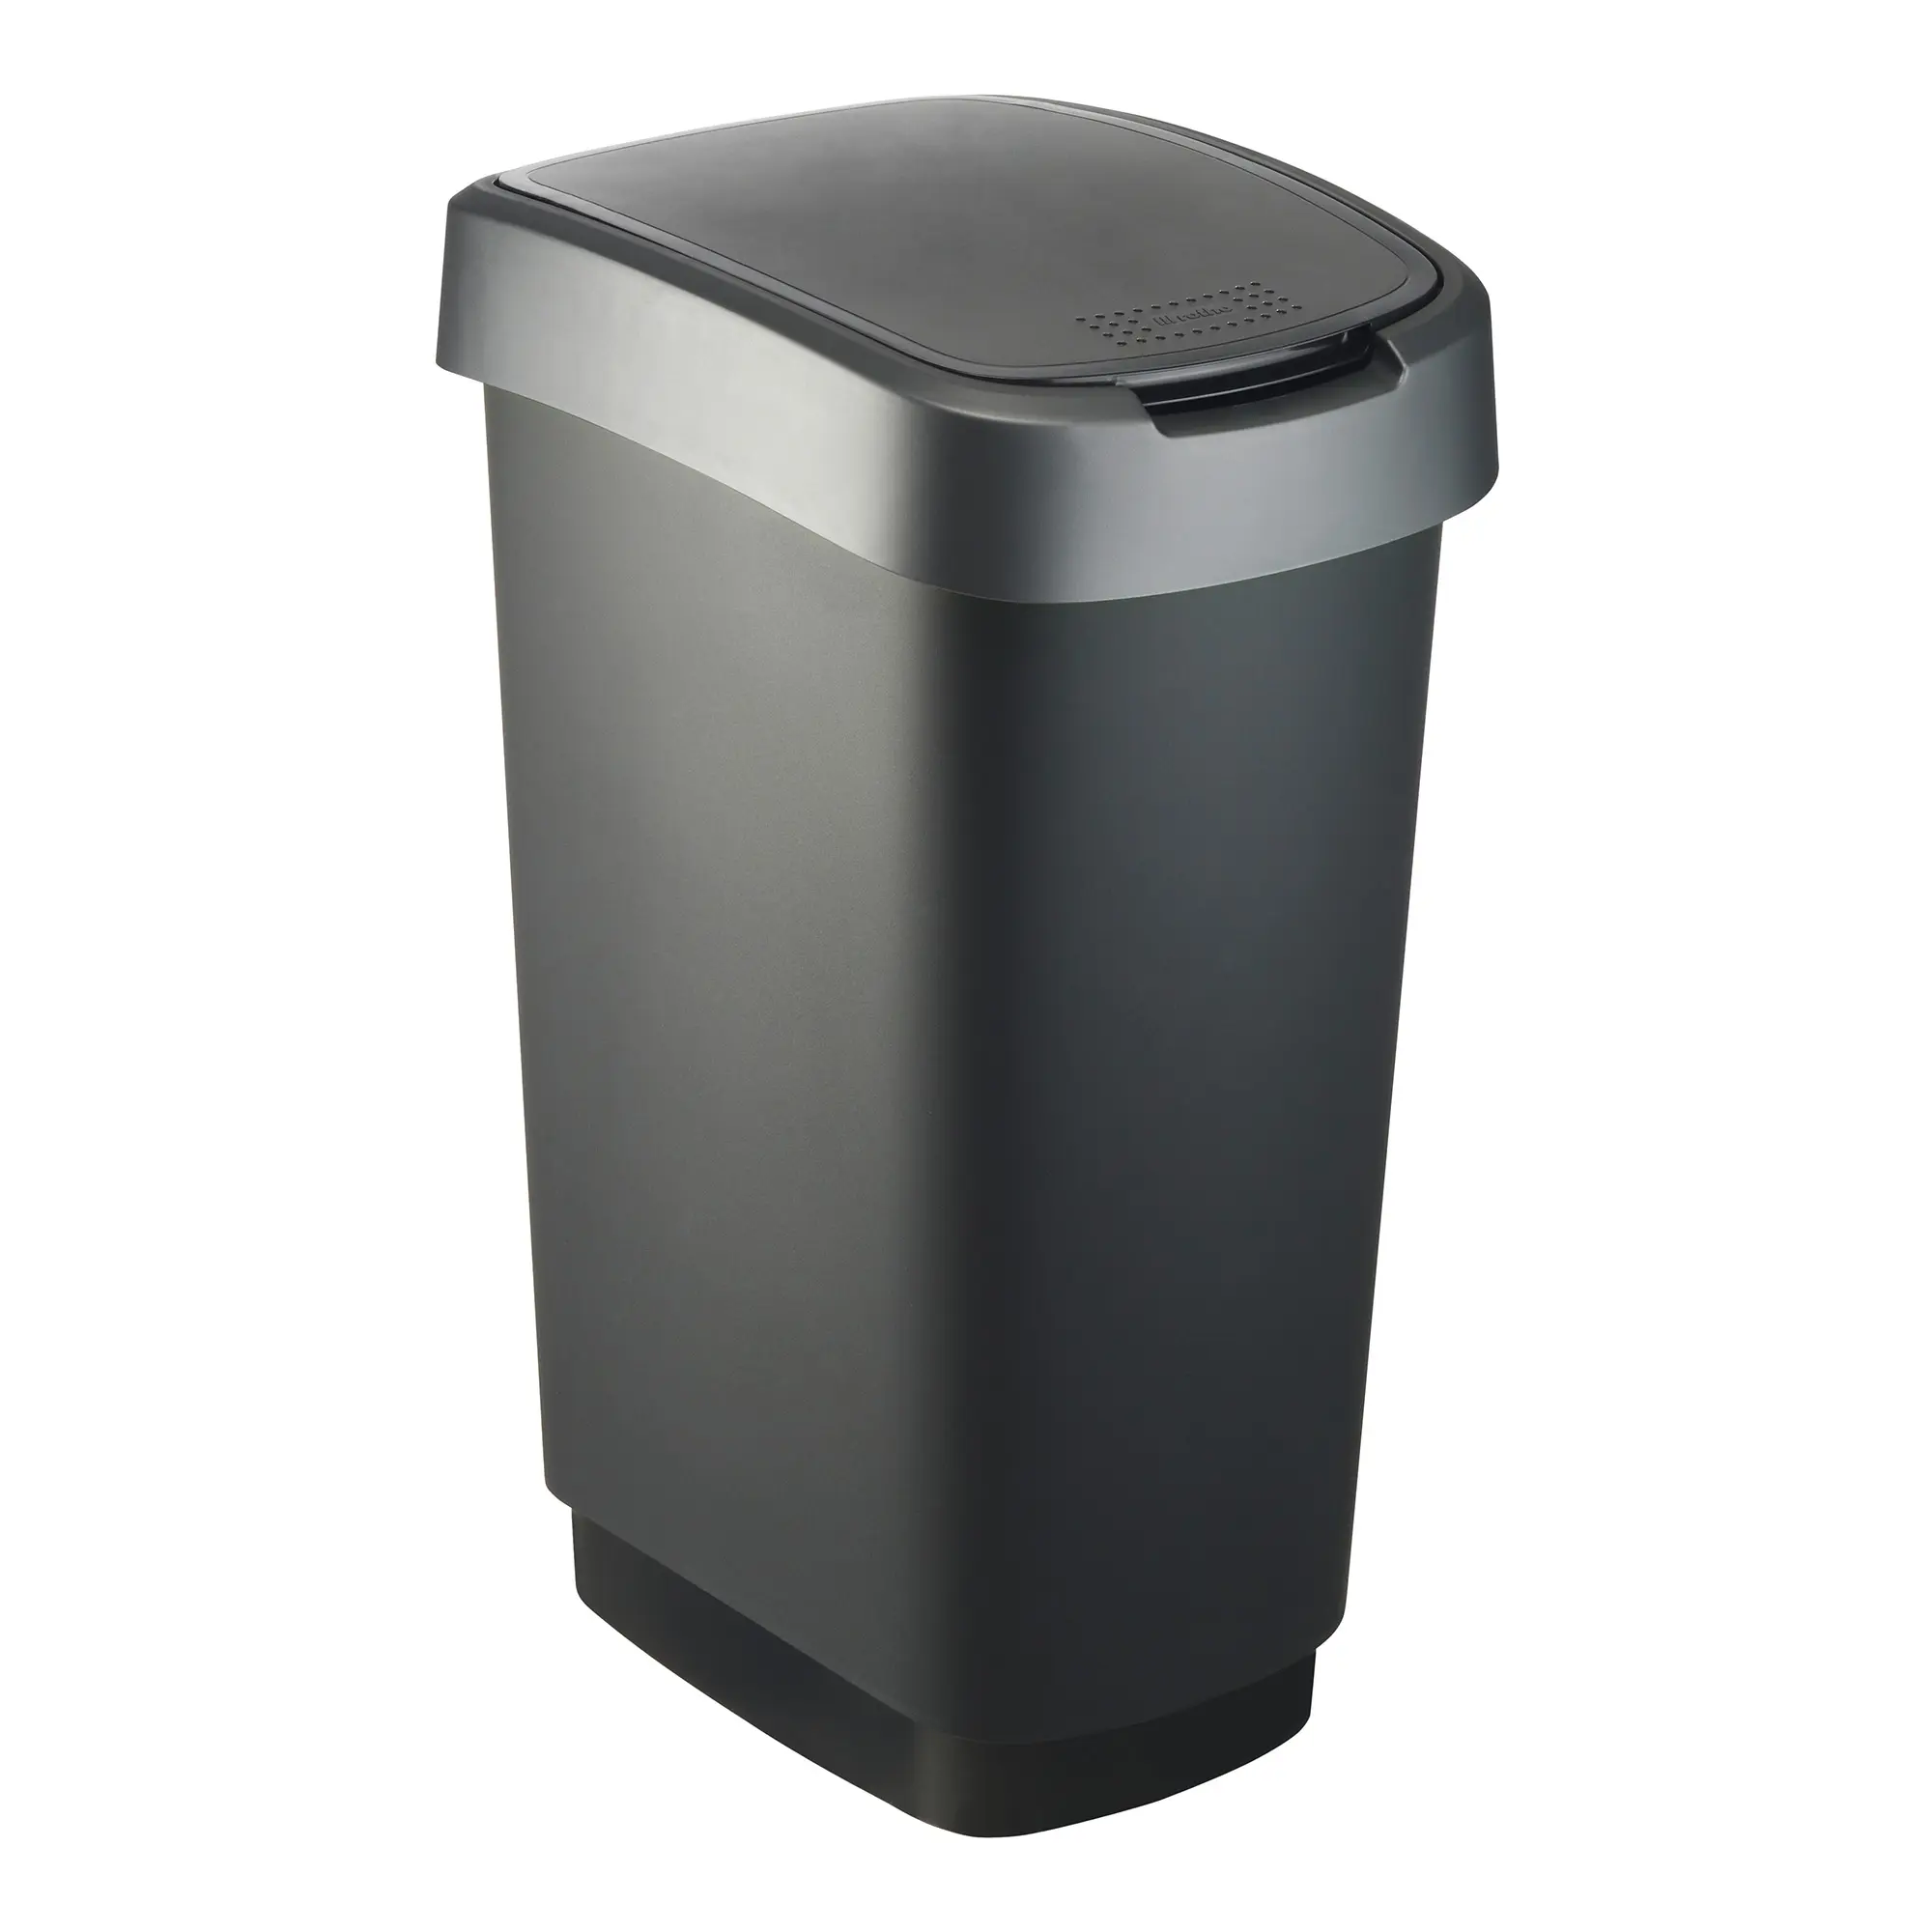 RothoPro Twist Abfallbehälter 50 Liter schwarz/silber 59135421_1